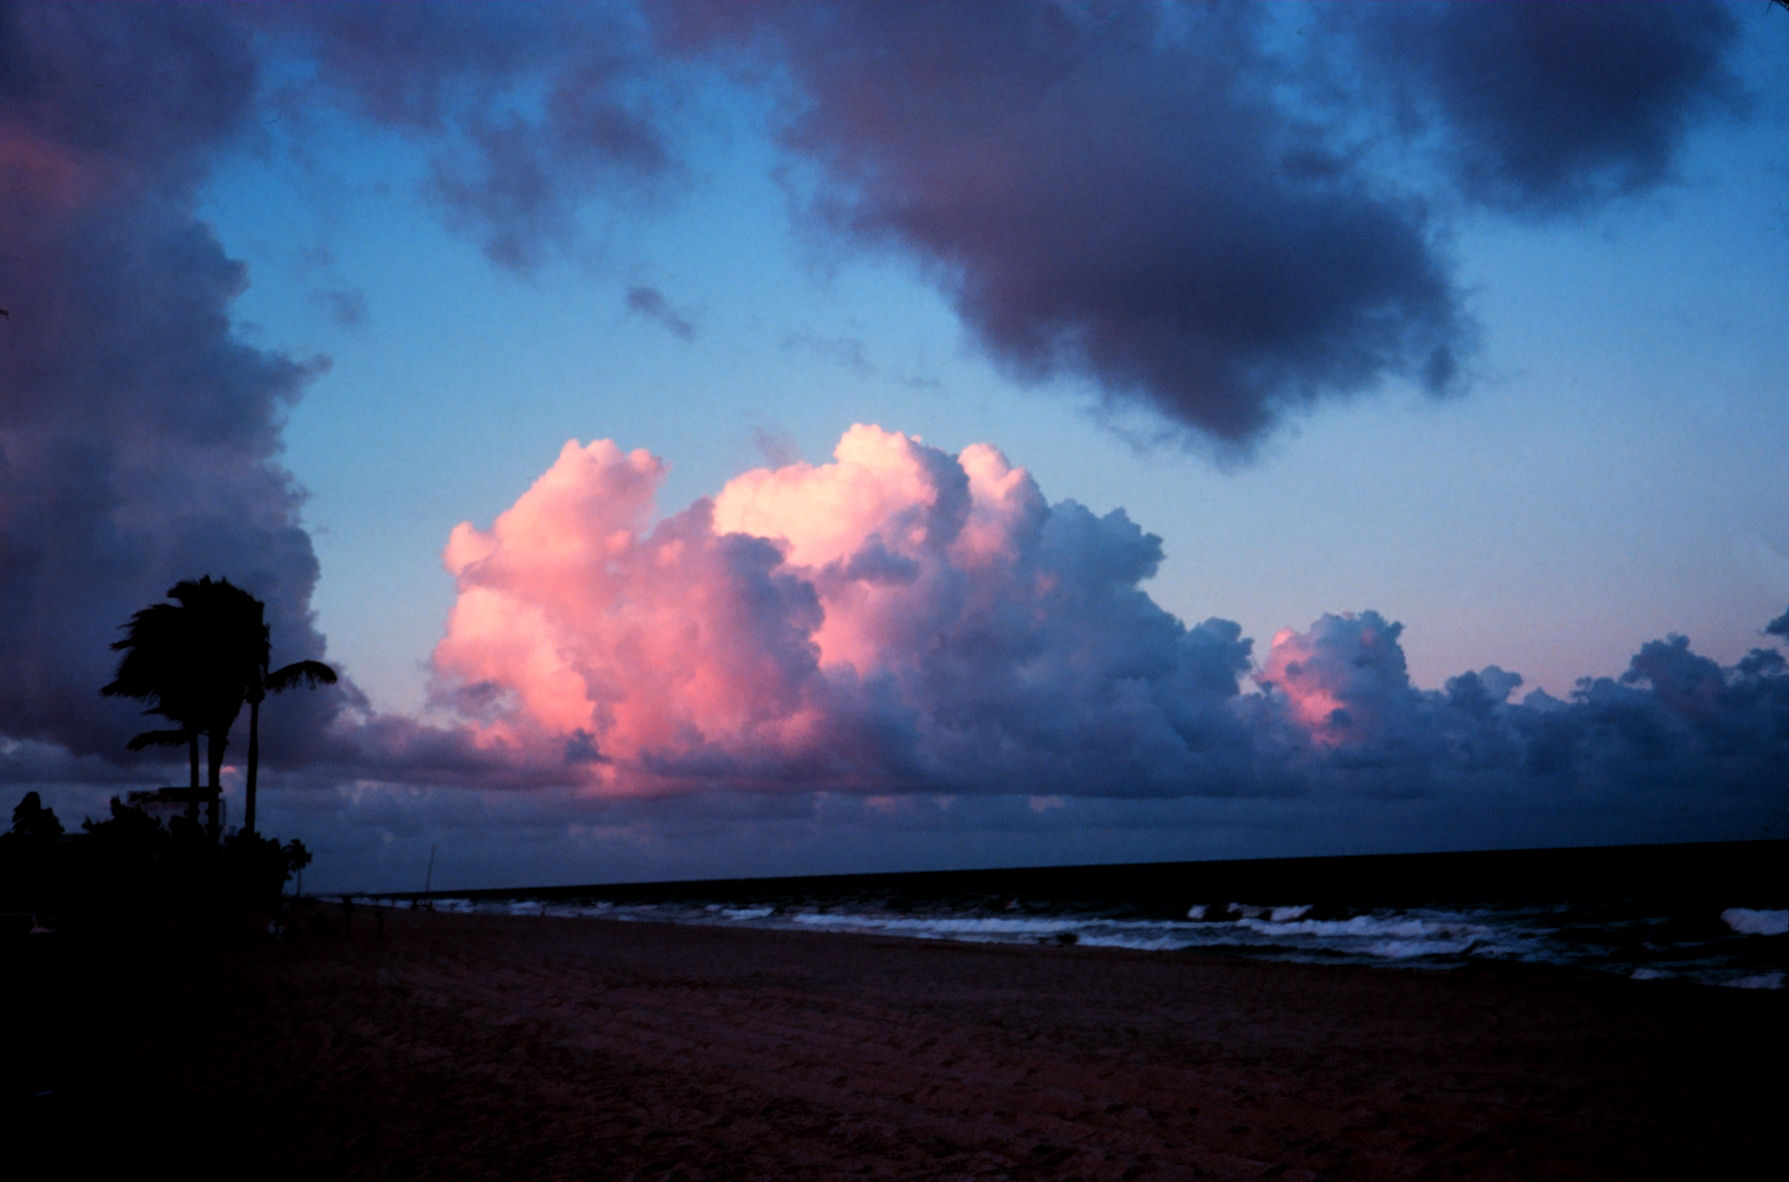 Cumulus clouds over the Atlantic Ocean